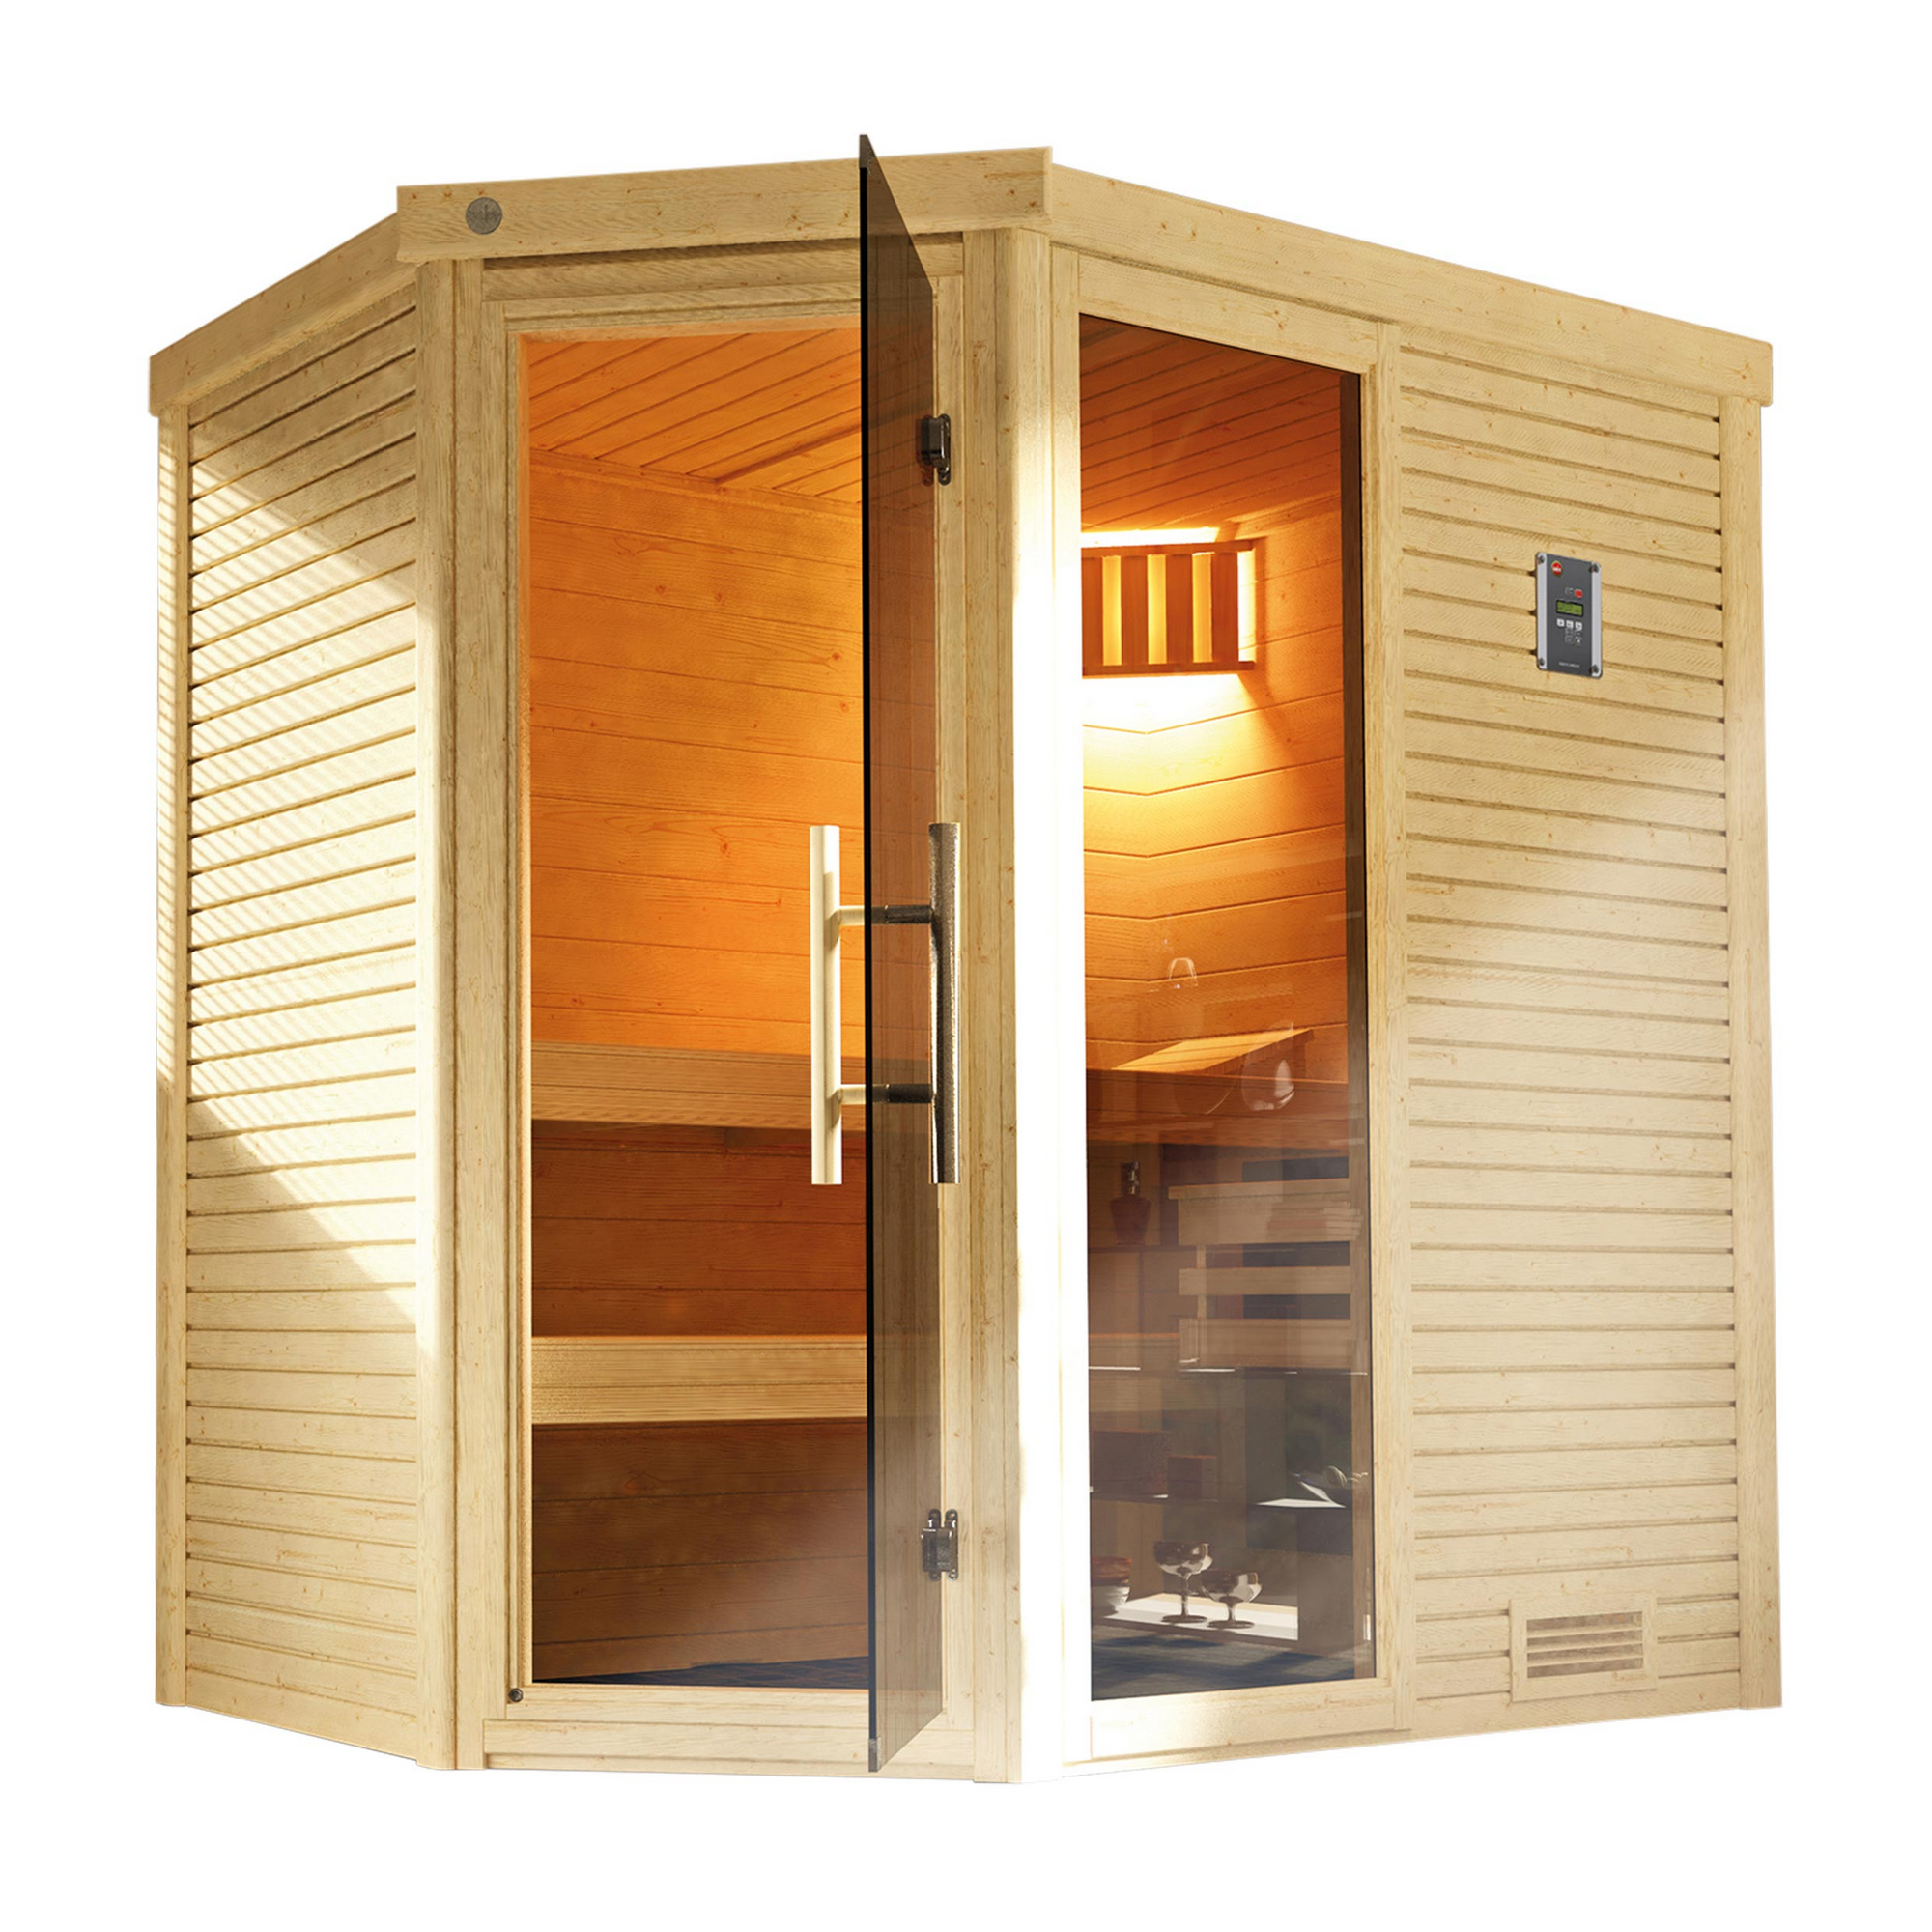 Design-Sauna 'Cubilis 2' mit 7,5 kW OS-Ofenset, Steuerung, Glastür, Fenster 198 x 198 x 205 cm + product picture